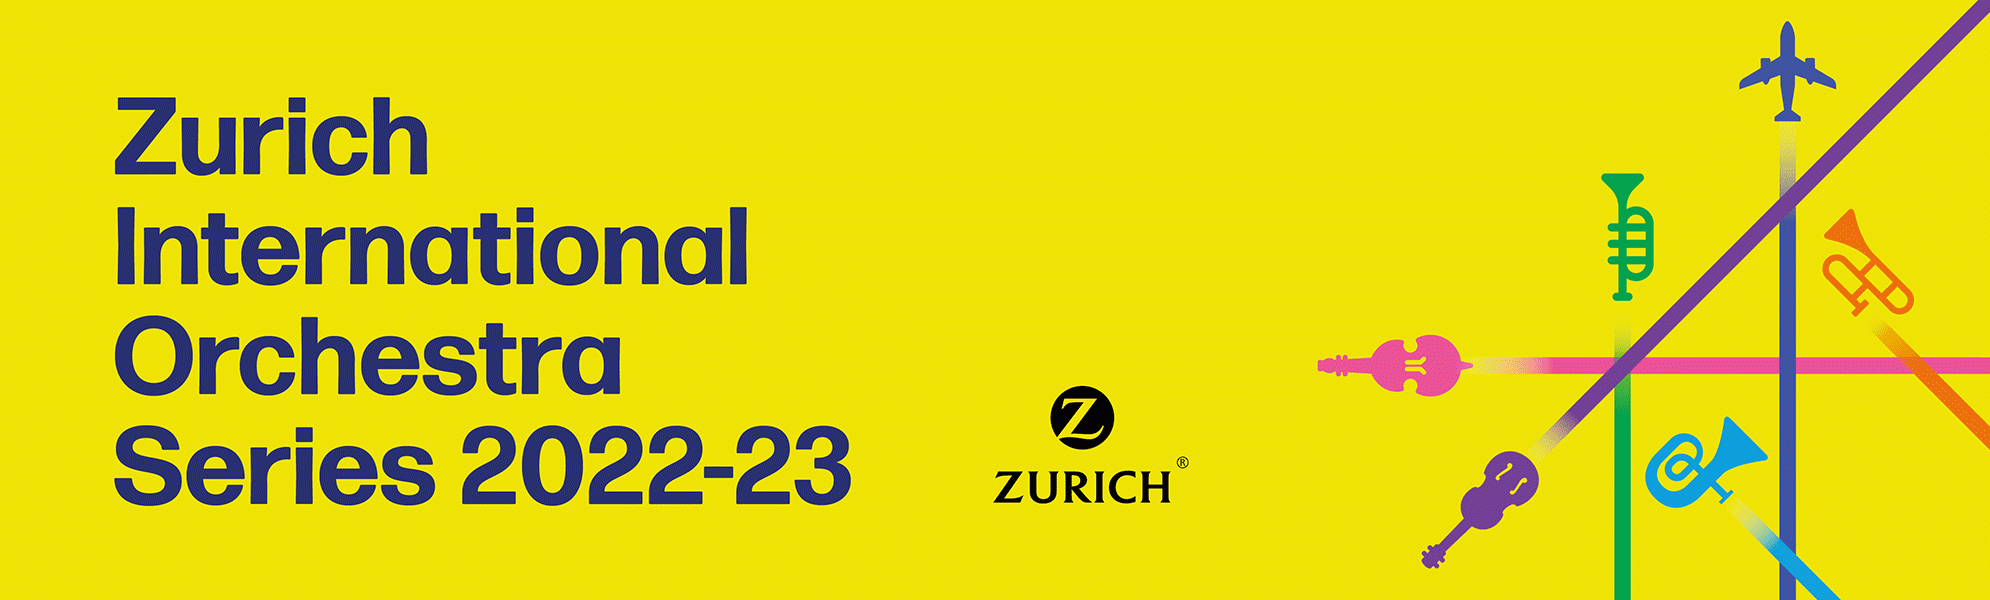 Zurich International Orchestra Series 2022-23